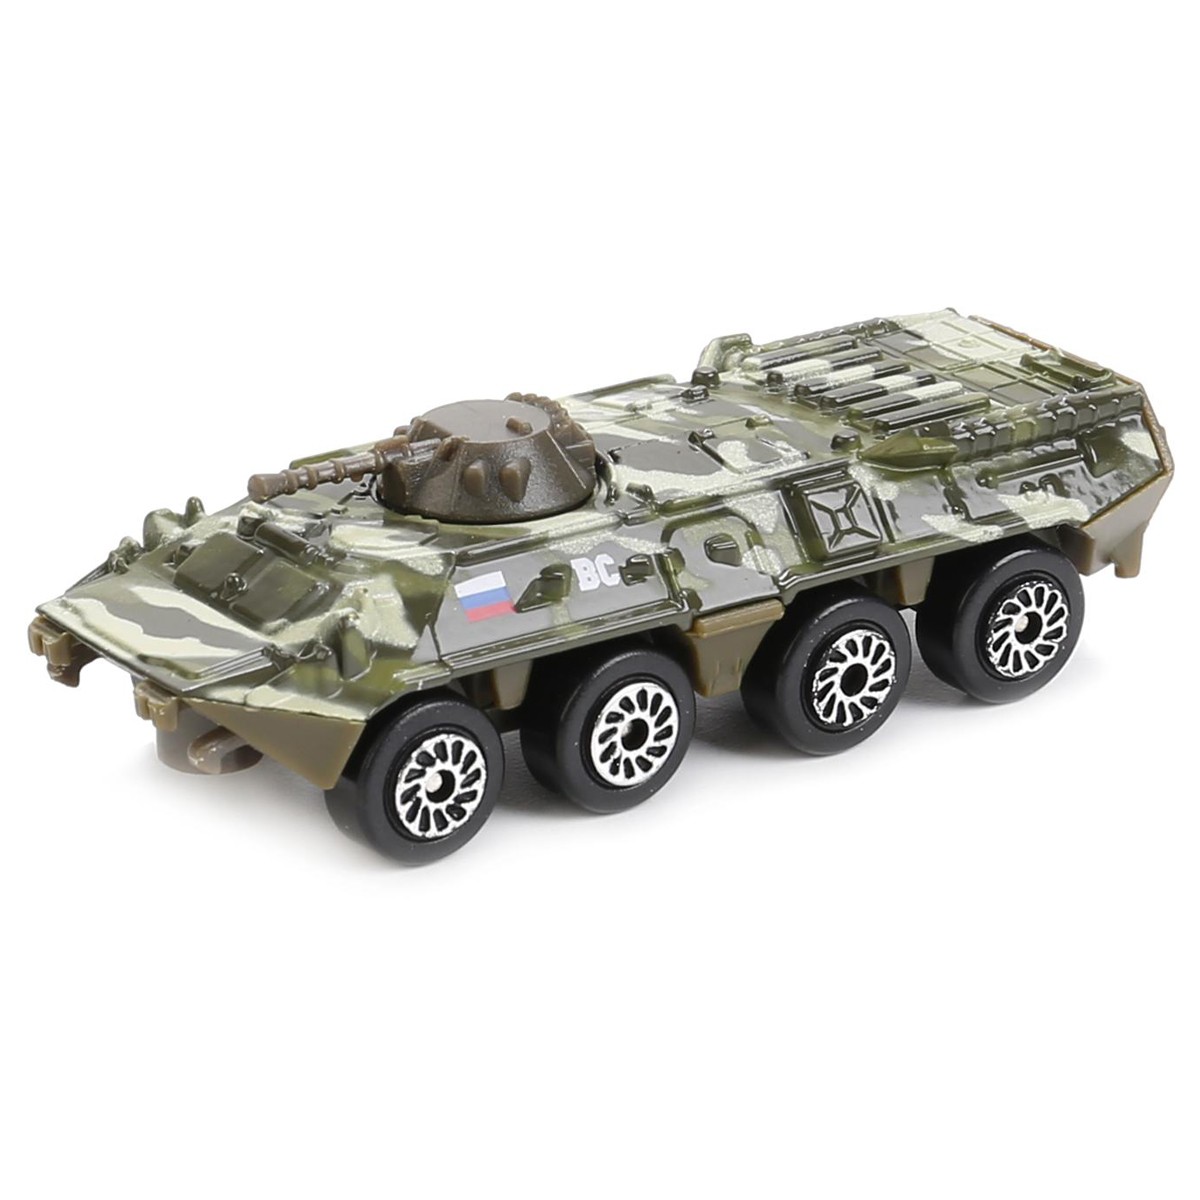 Машина игрушечная Технопарк Военные модели, металл., масштаб 1:72, ассорти, в яйце